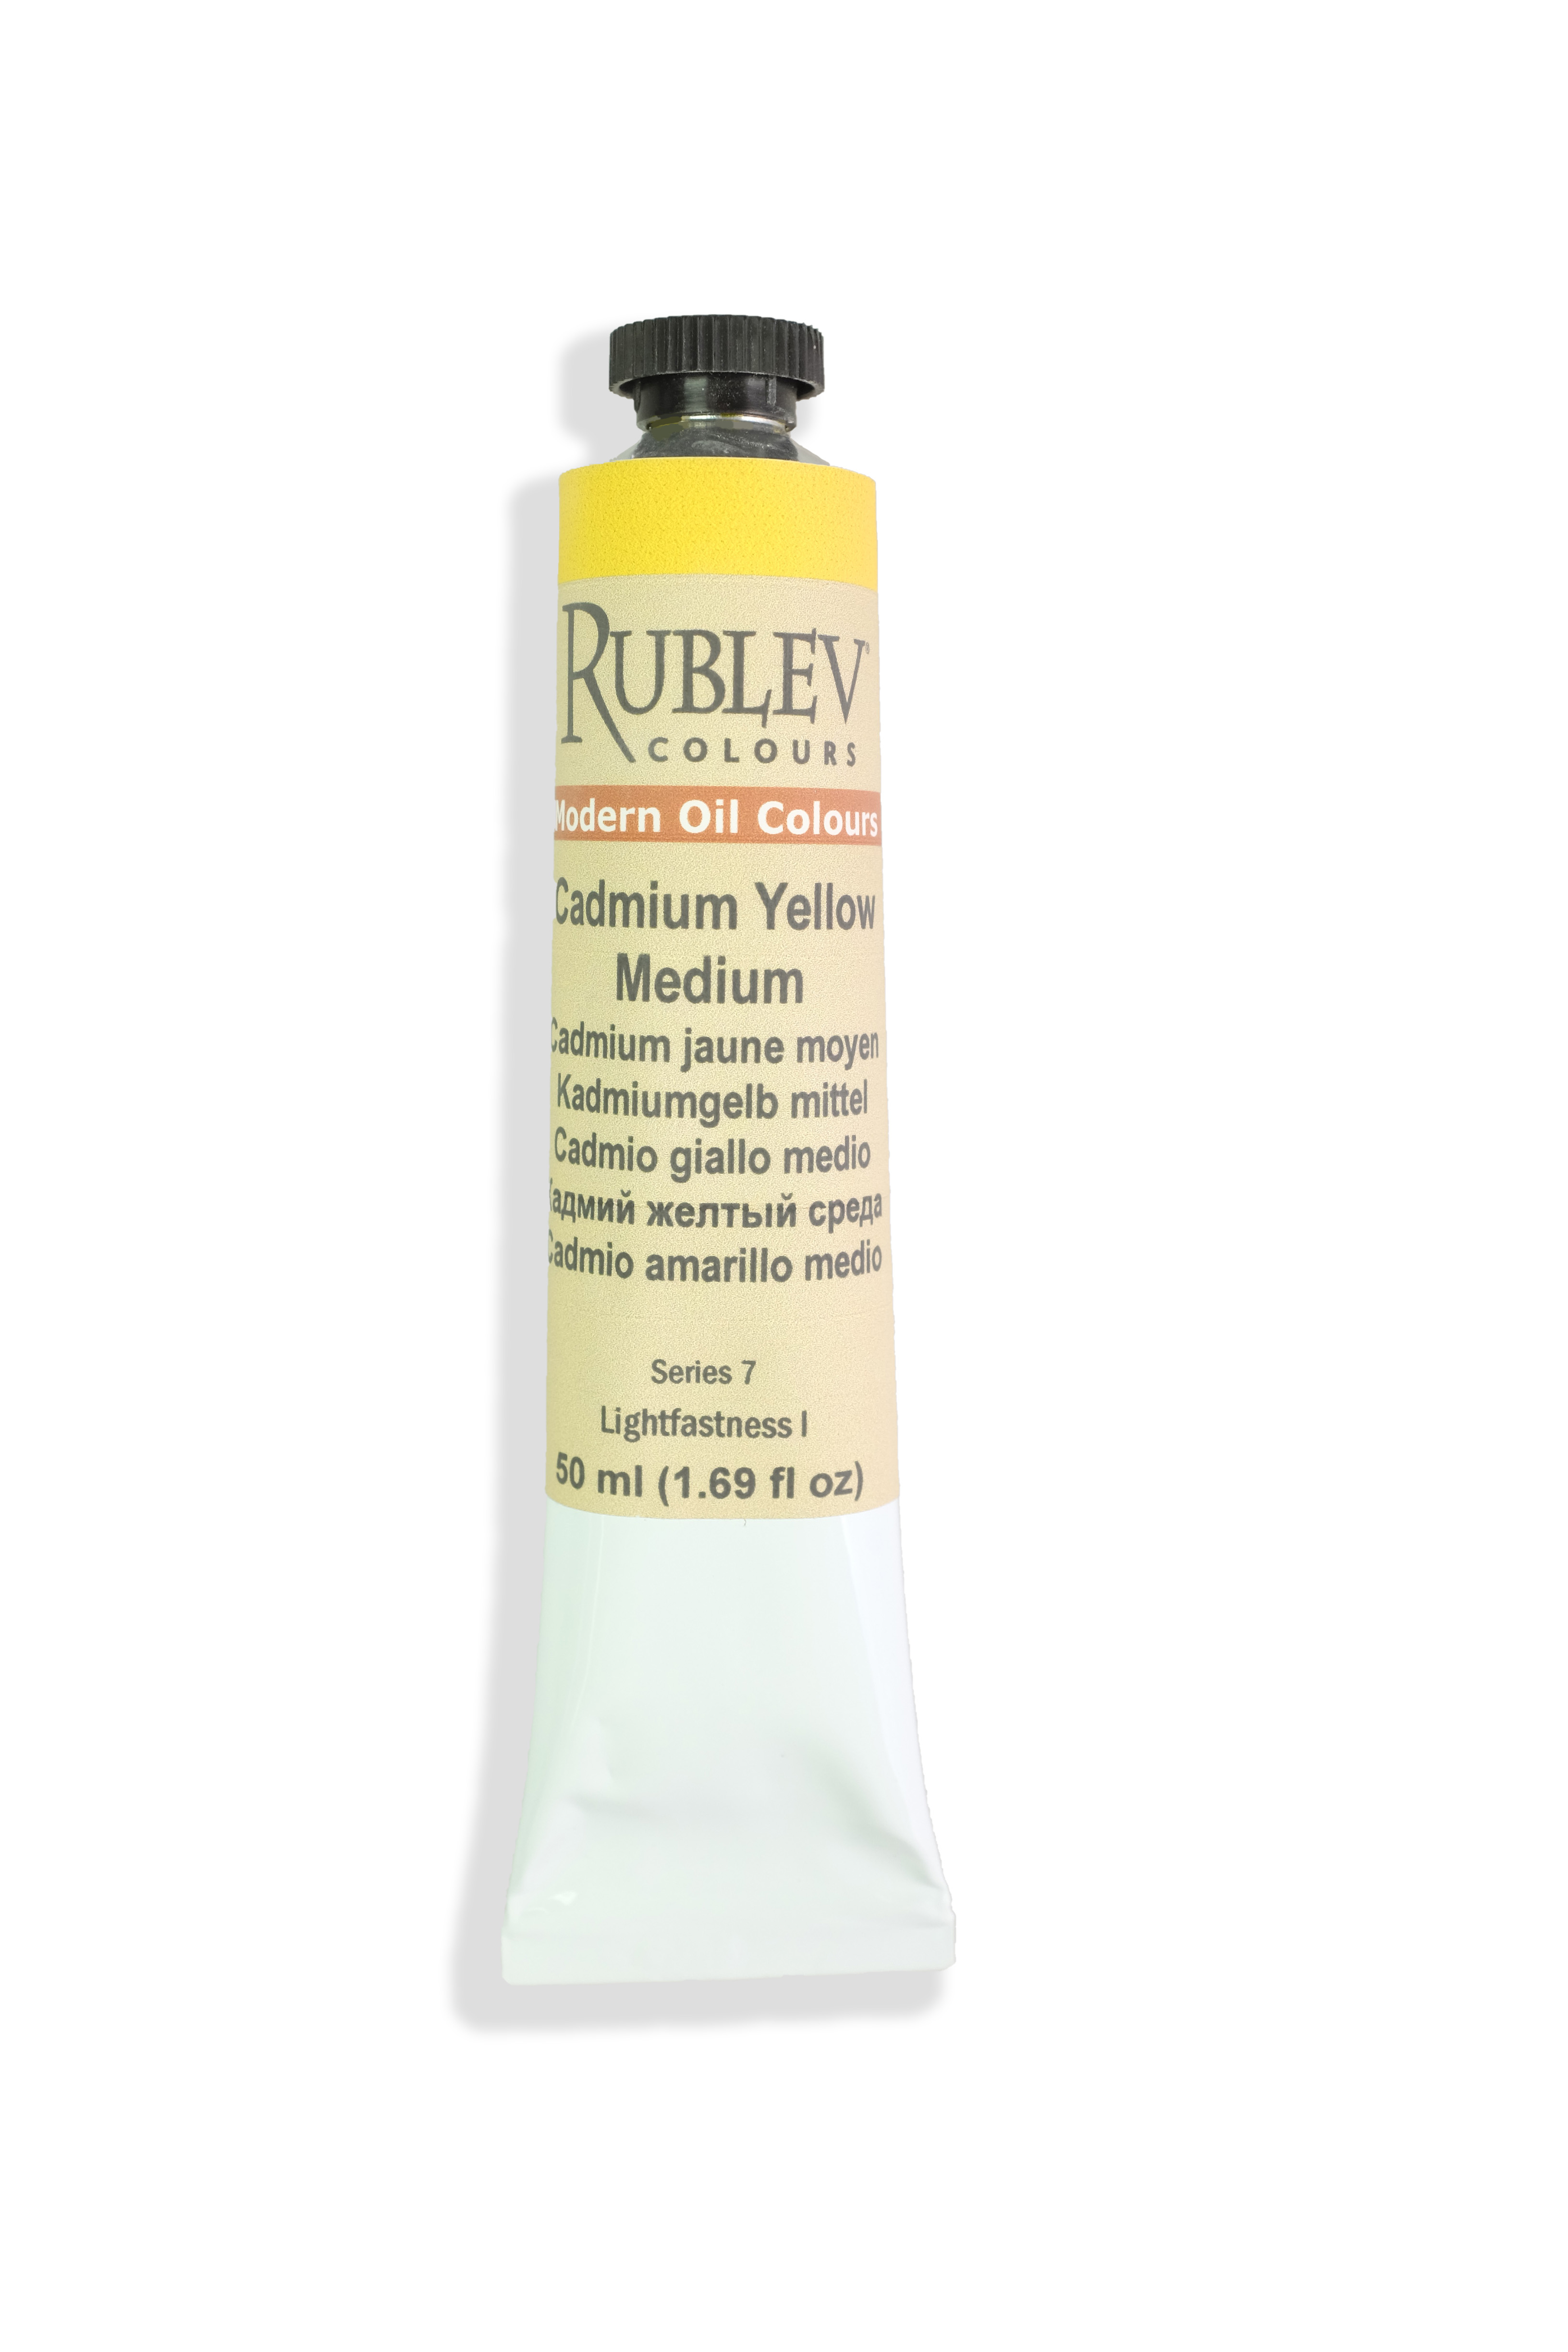 Rublev Colours Cadmium Yellow Medium